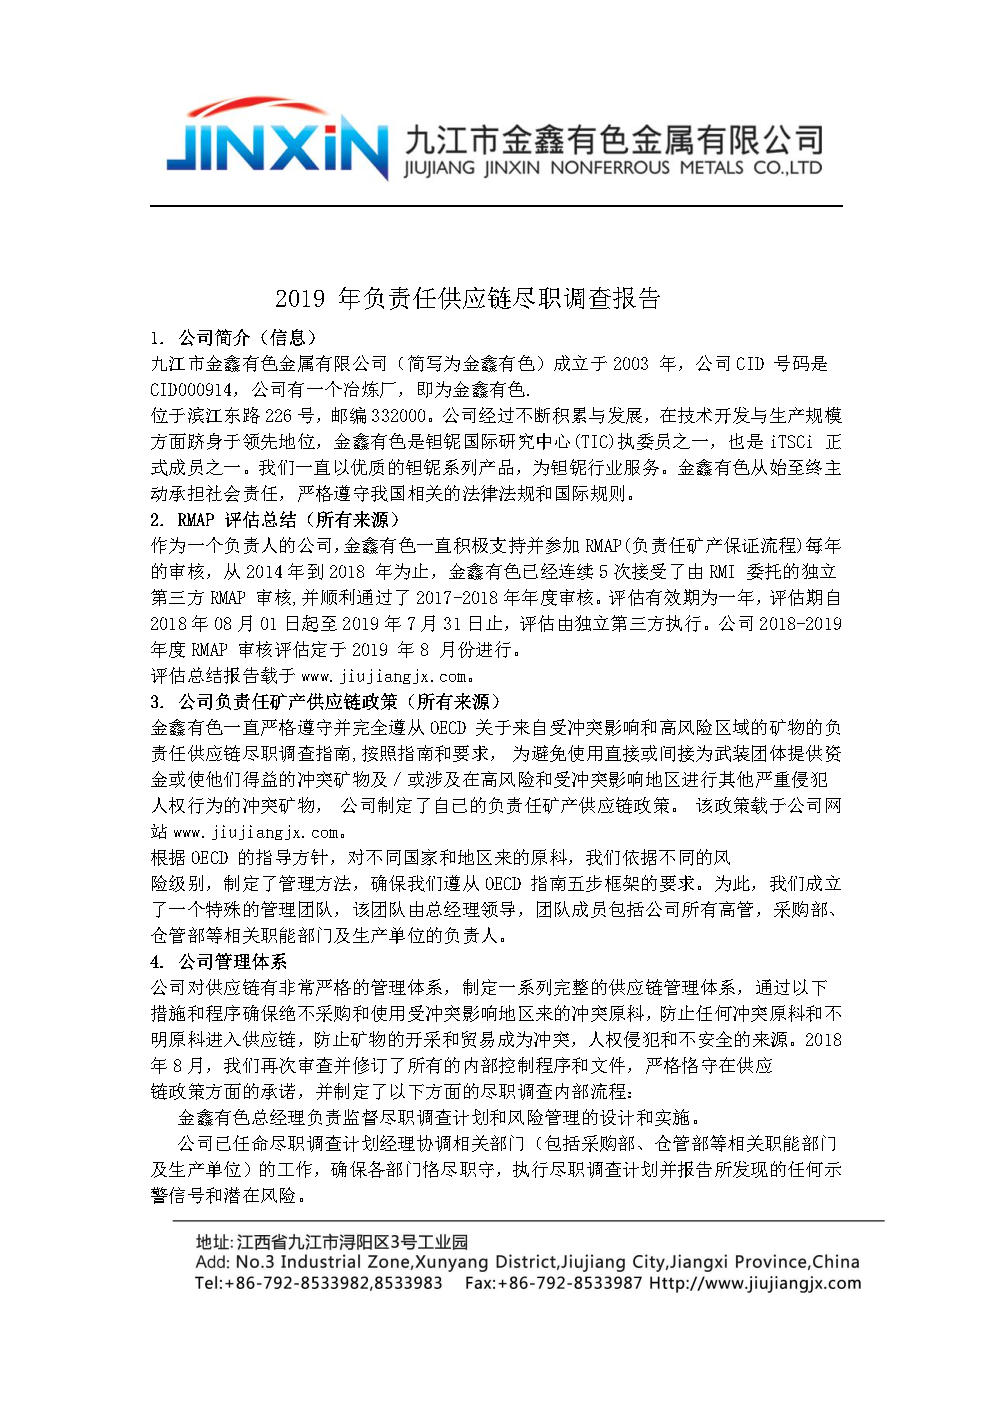 2019 年金鑫負責任供應鏈盡職調查報告中文